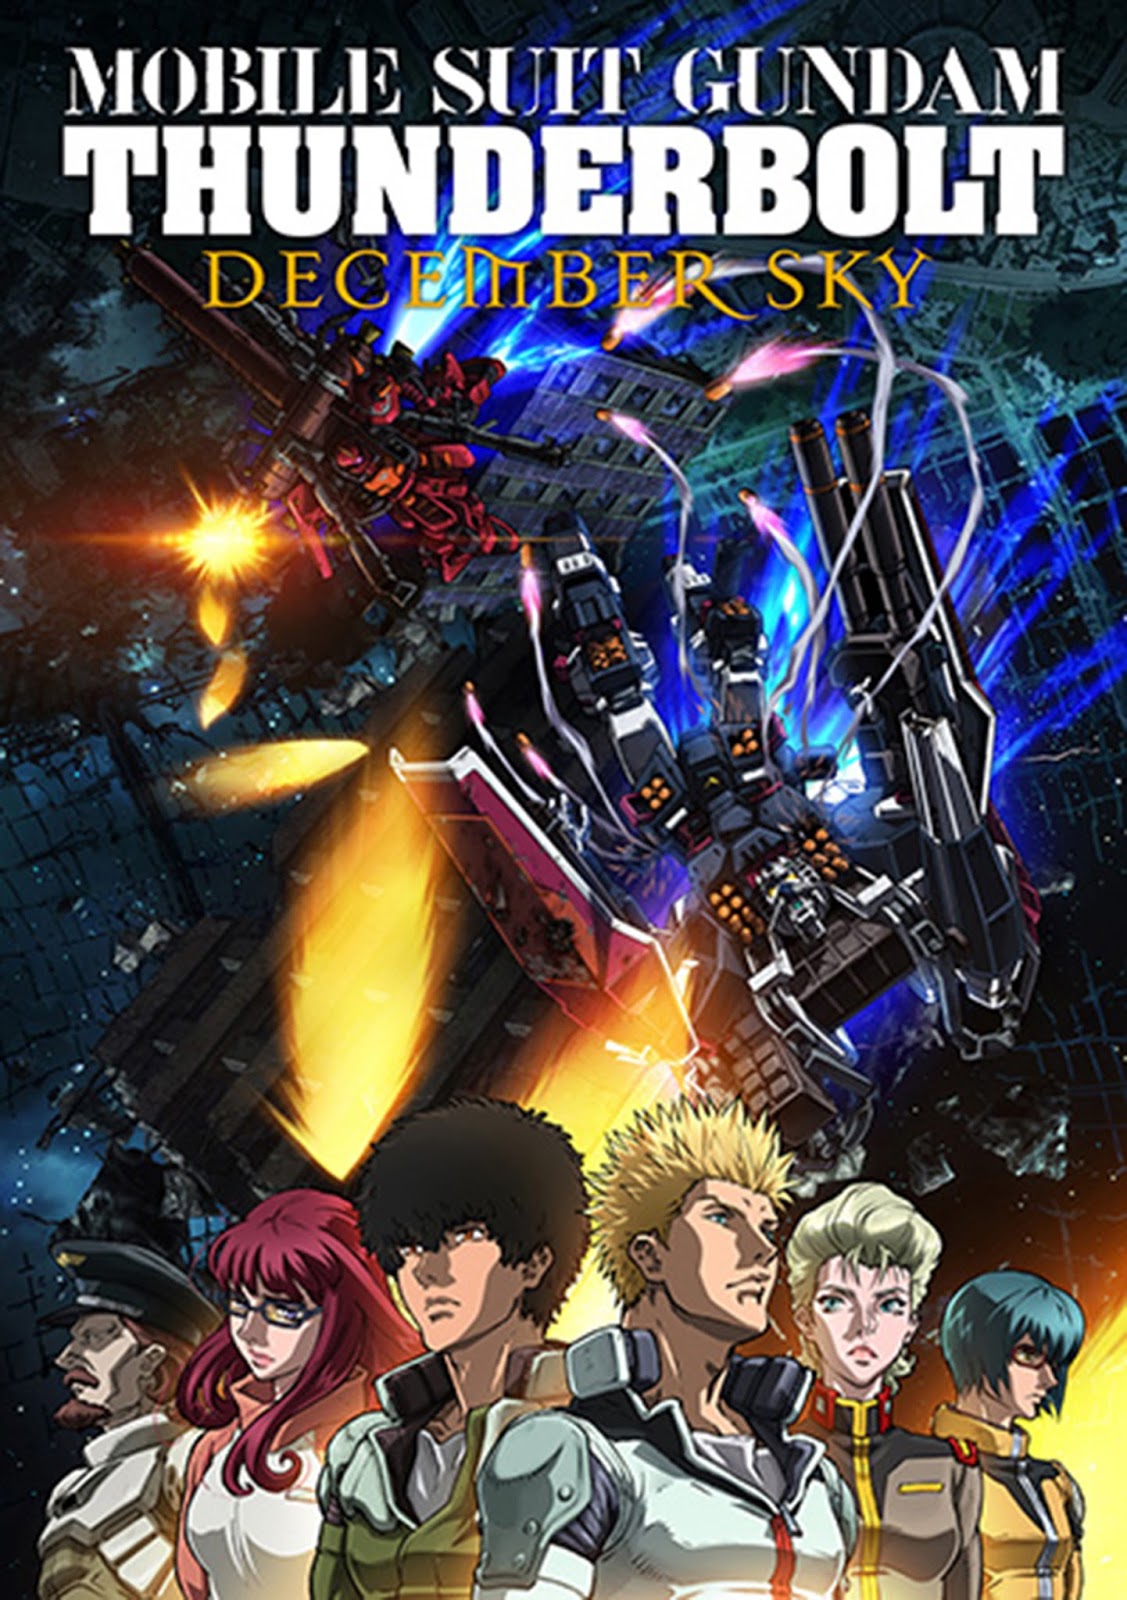 Mobile Suit Gundam Thunderbolt: December Sky 2016 - Full (HD)